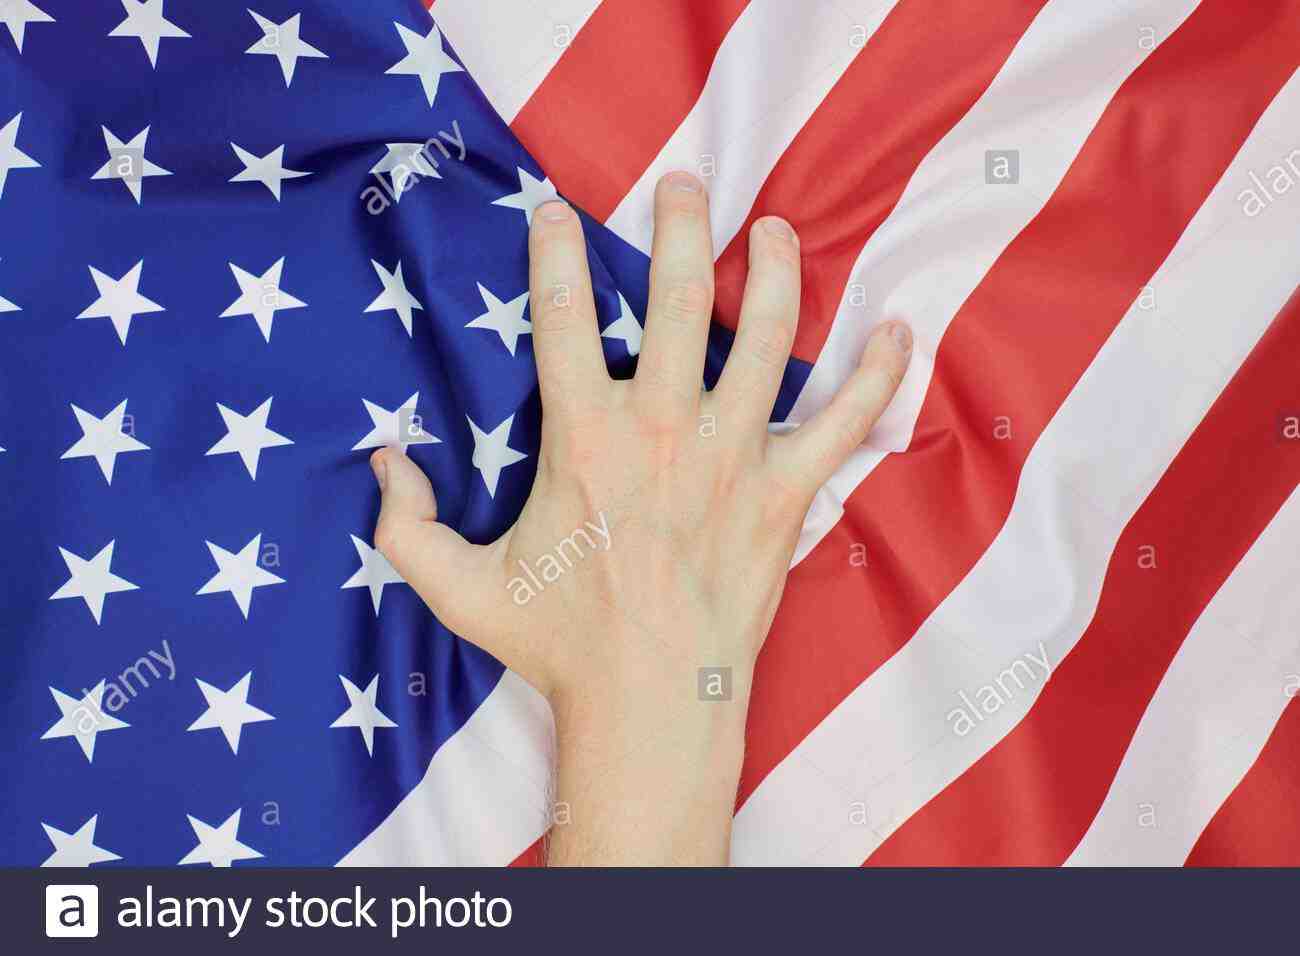 Qui a créé le drapeau américain ?